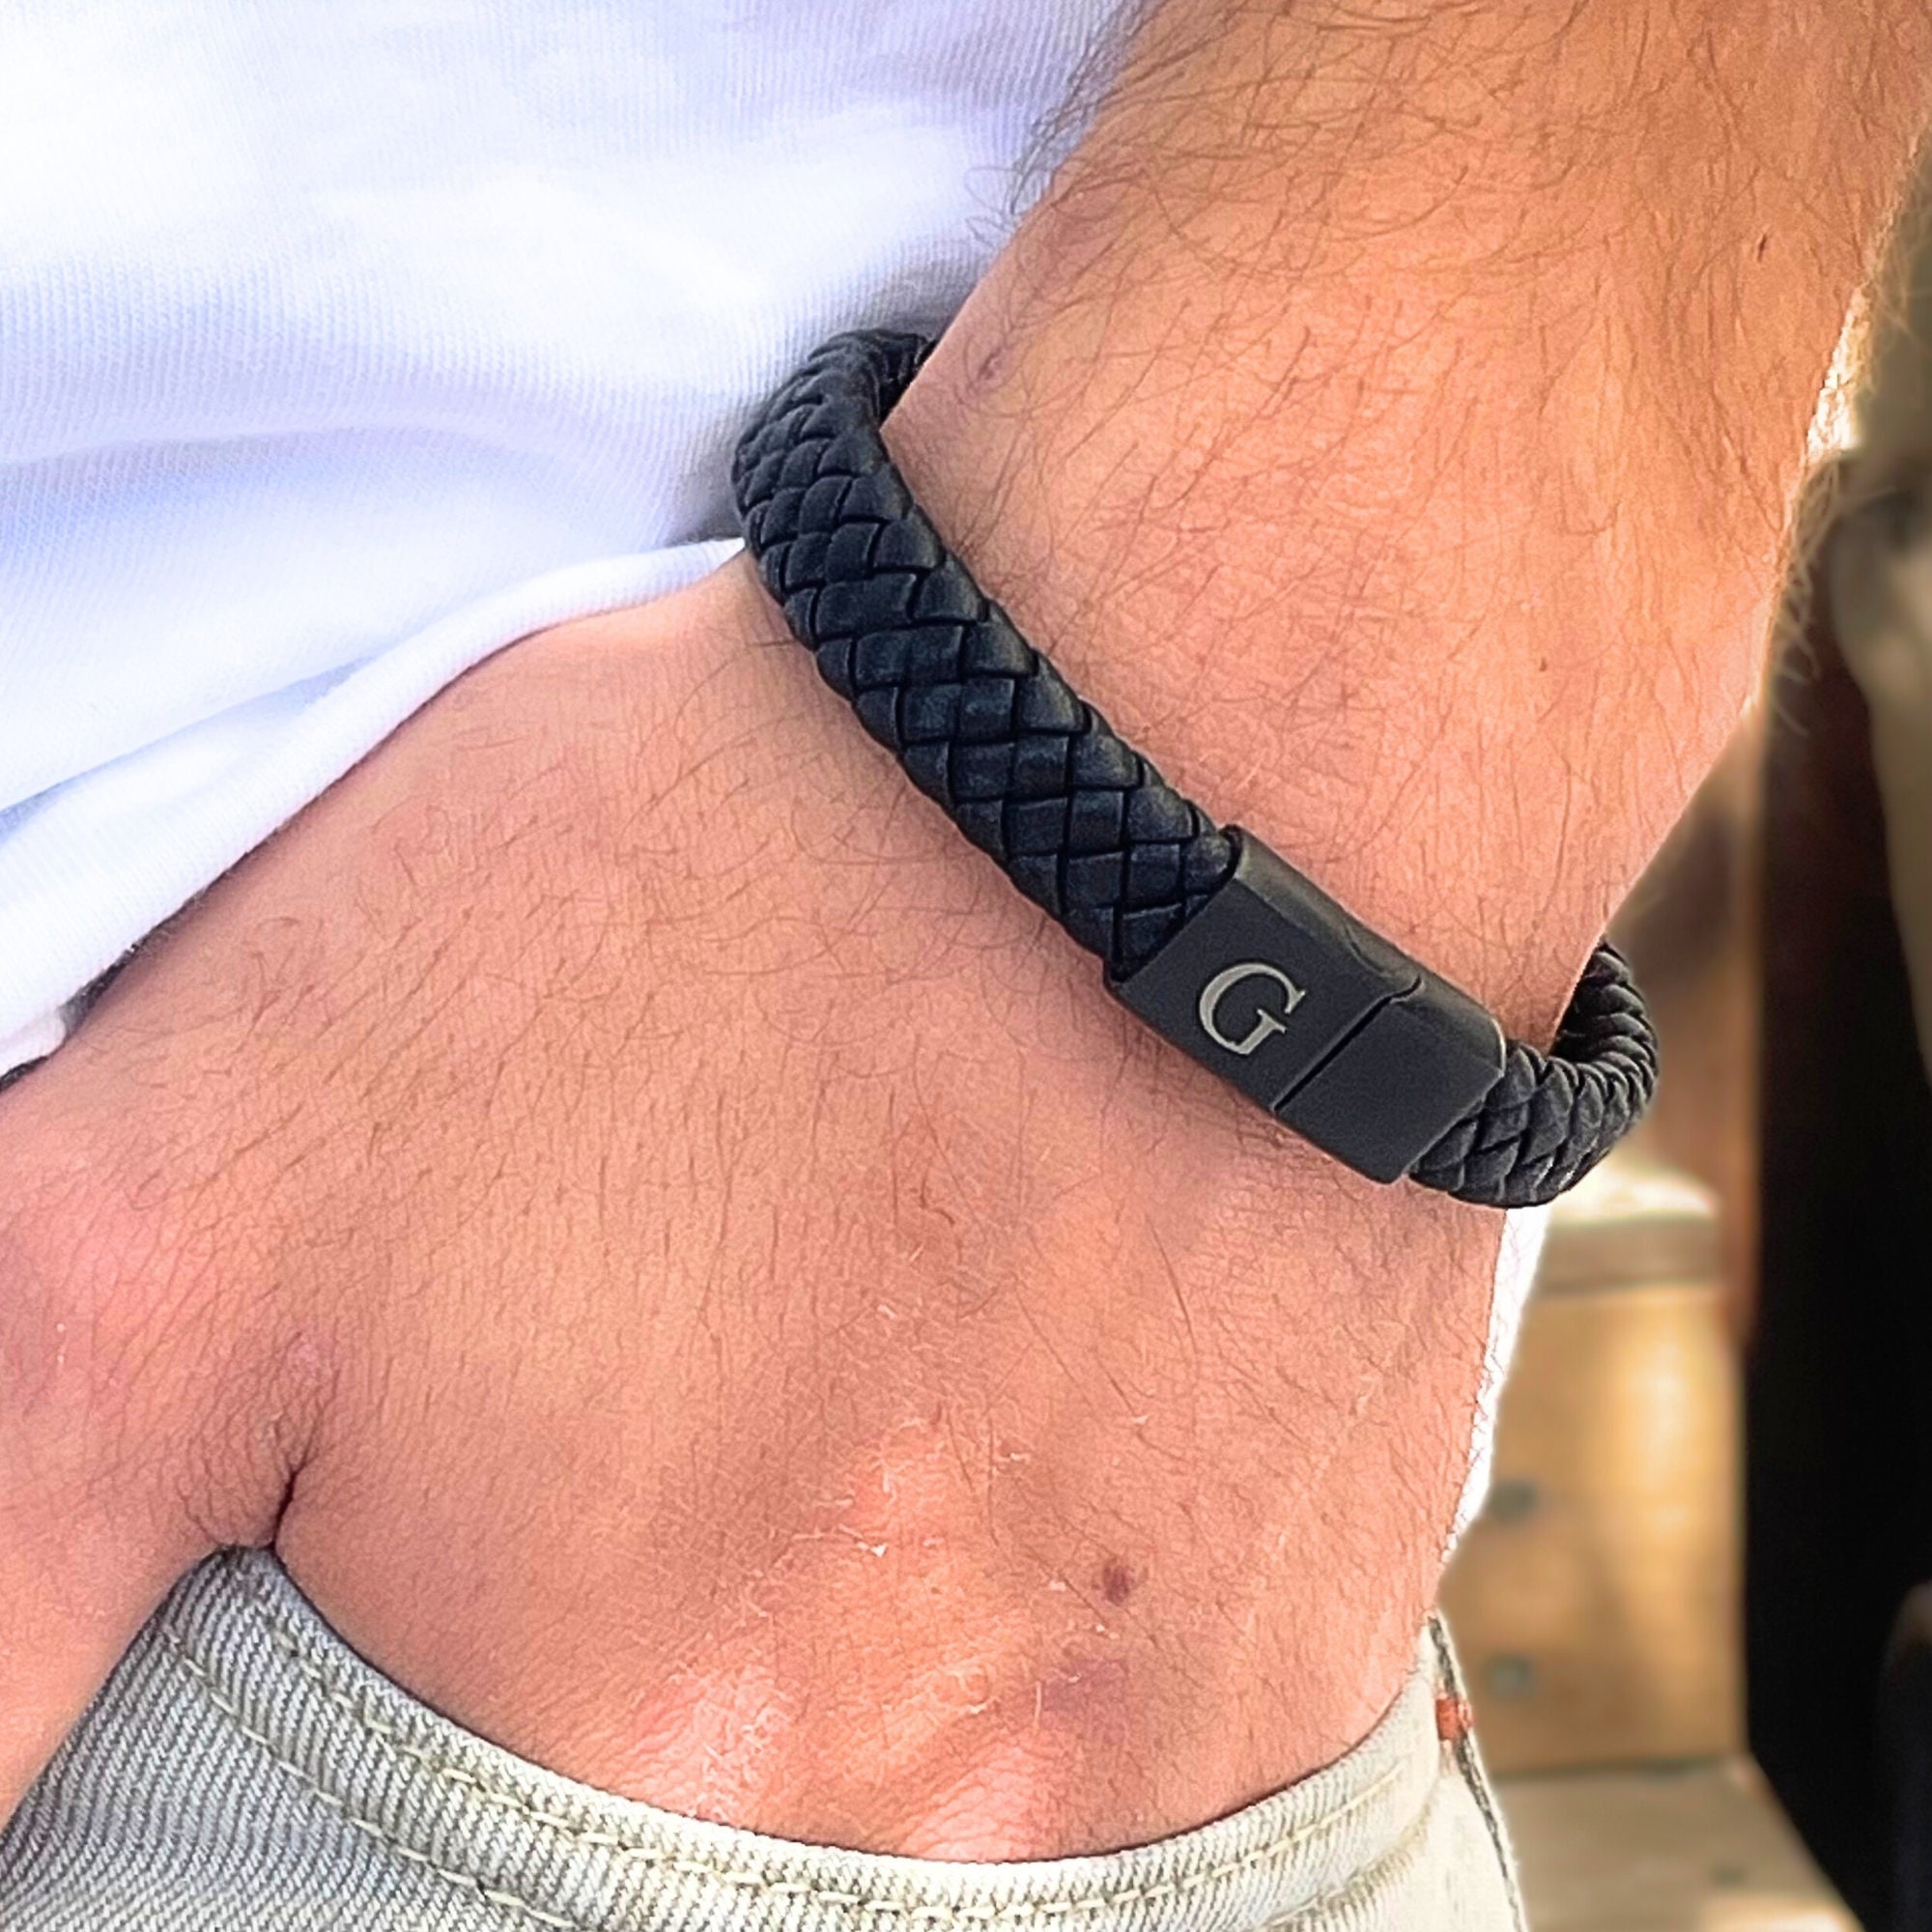 Men's Secret Message Leather Bracelet